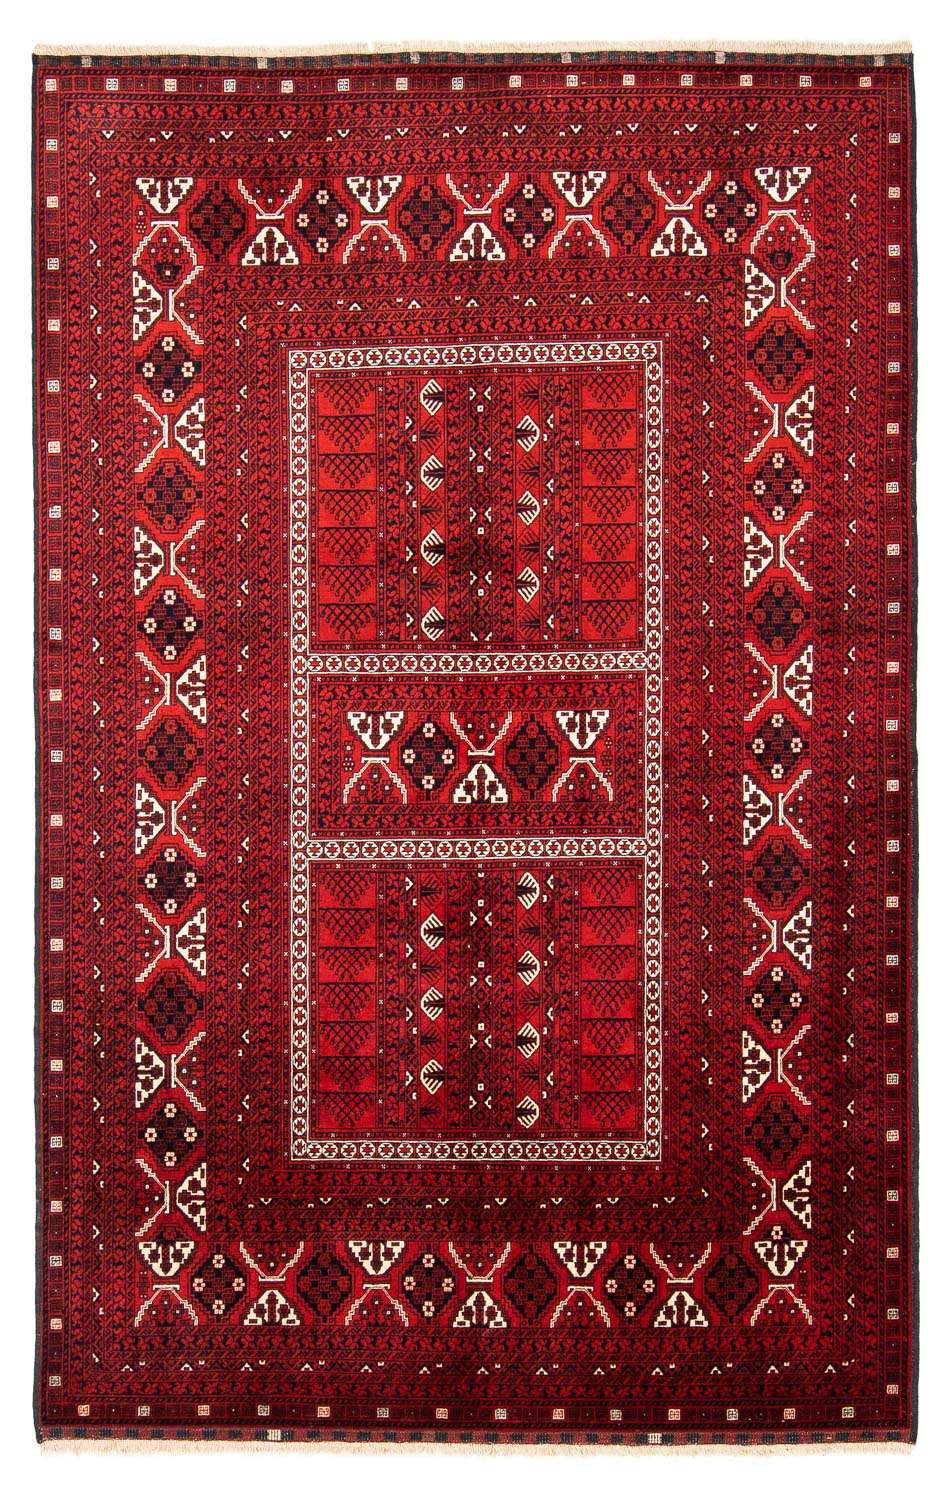 Tapete turquaman - 243 x 160 cm - vermelho escuro